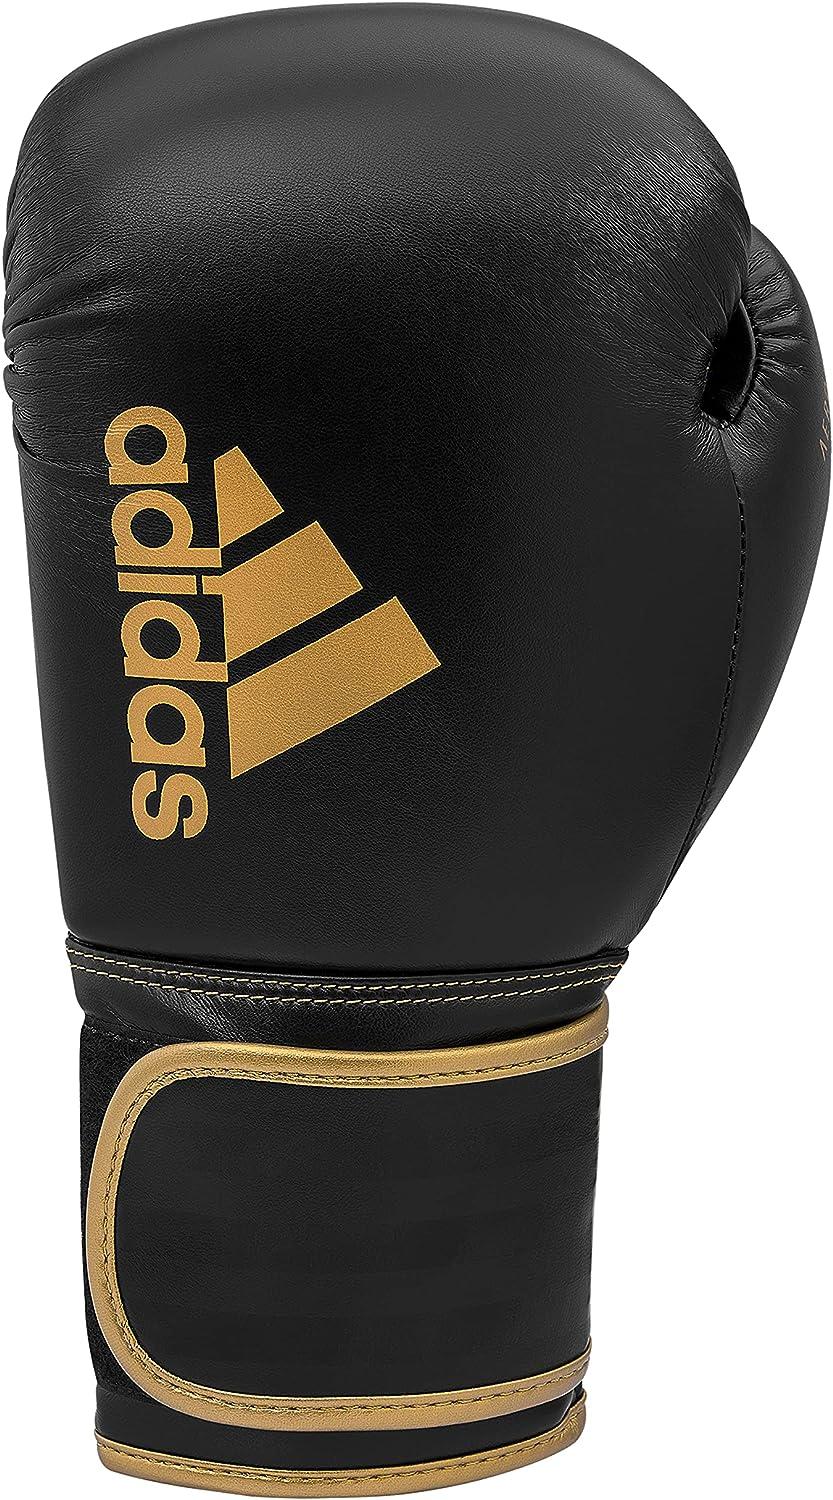 Bag, Gloves Training Boxing, - Boxing Kickboxing, Gloves Hybrid Black/Gold & Fitness Boxing Men, & Adidas - for Women - 12oz 80 for Kids MMA,